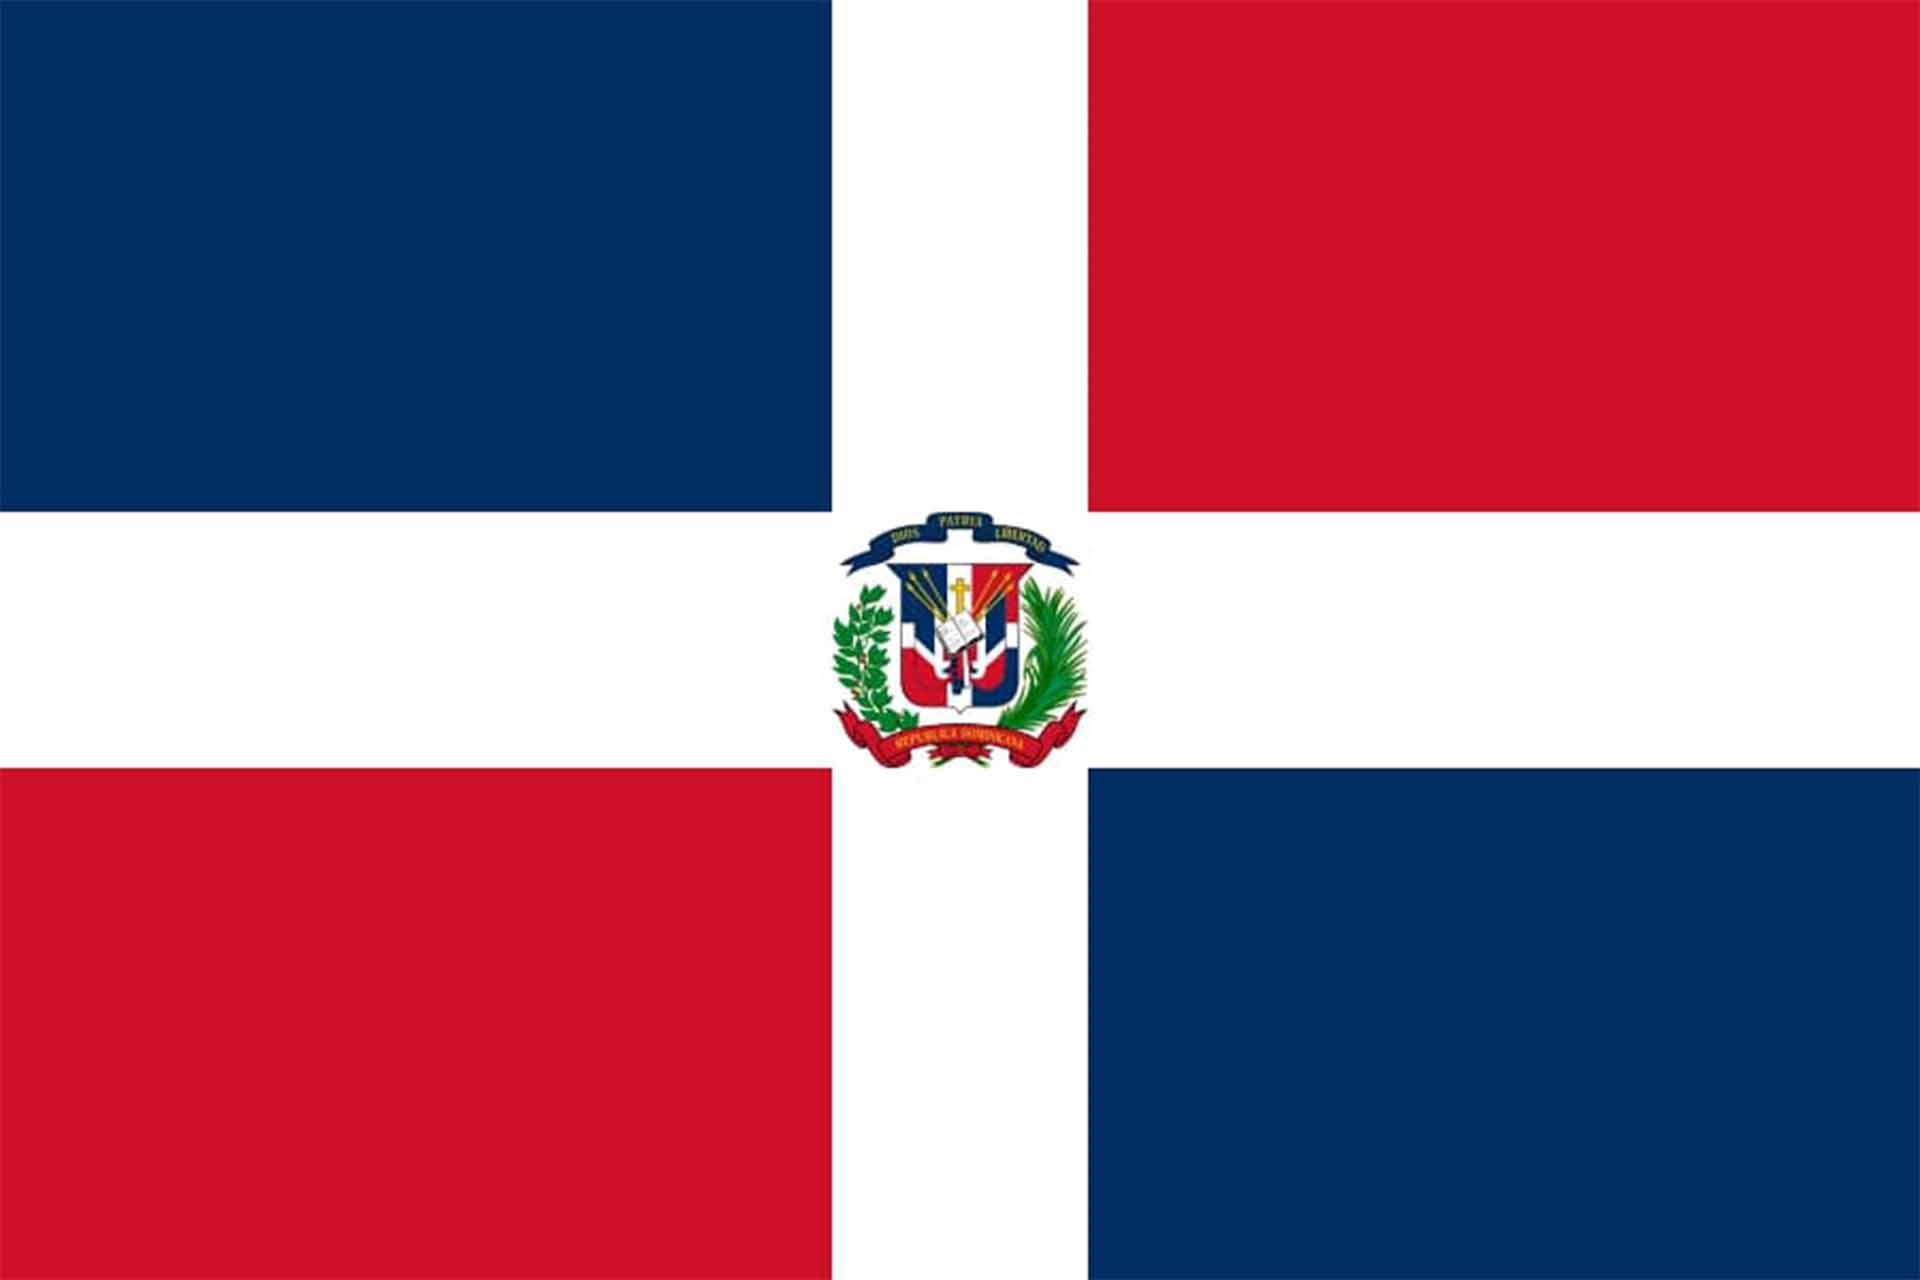 多明尼加共和国